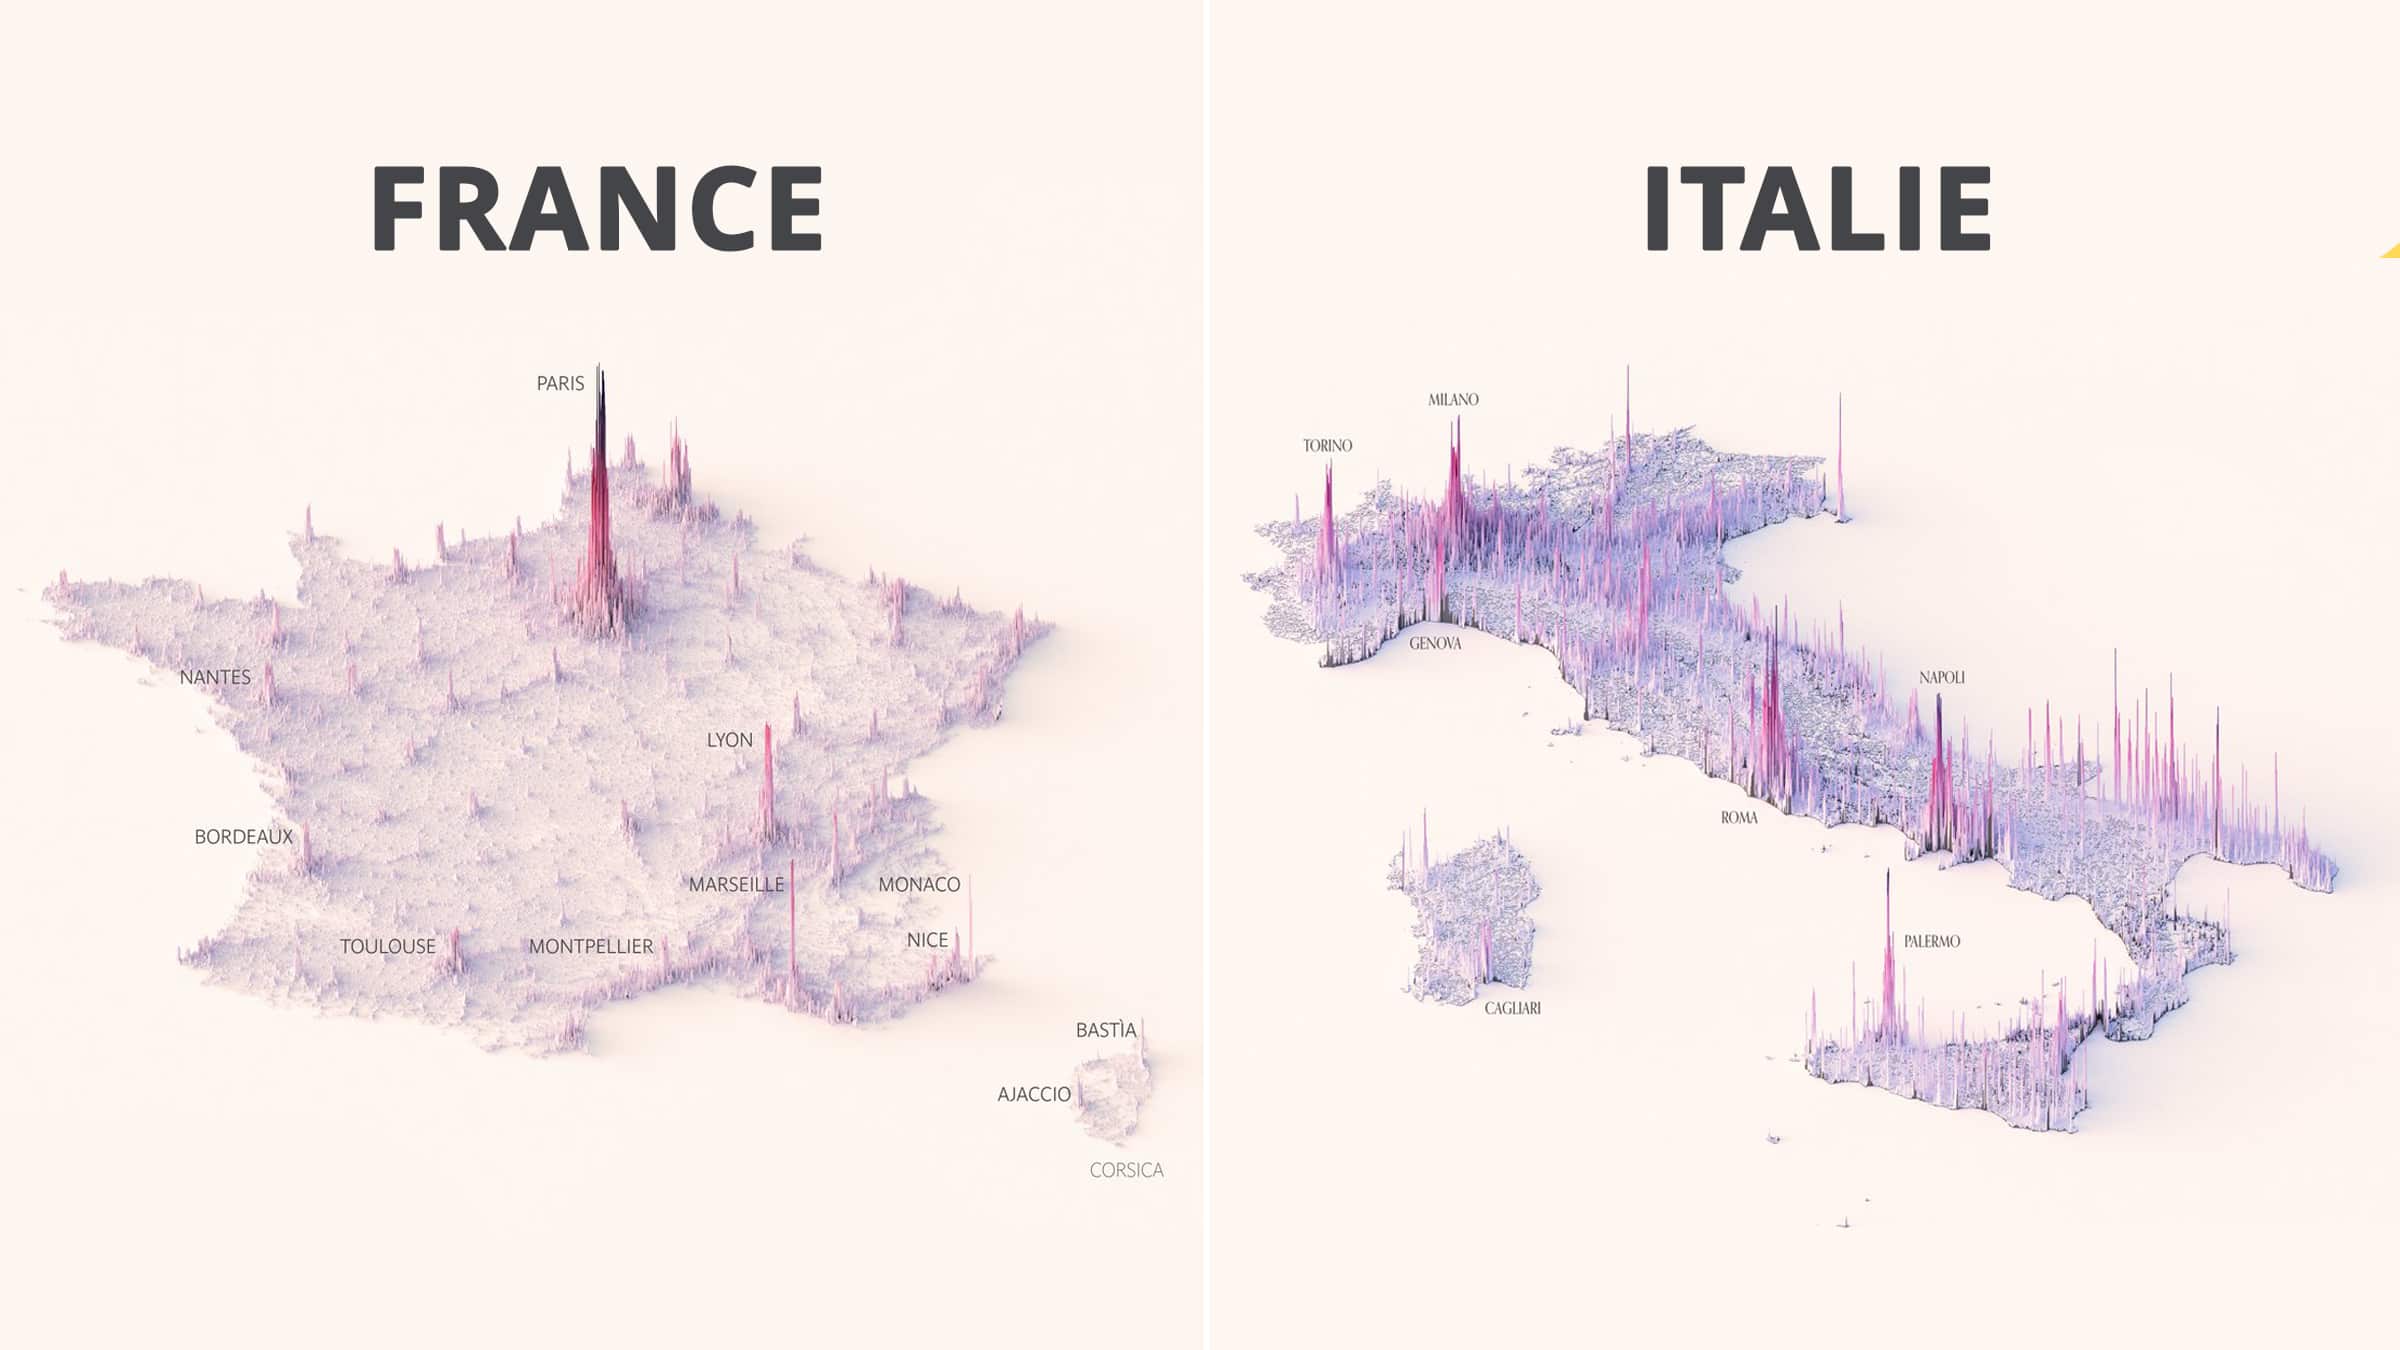 25 cartes qui illustrent la densité de population des pays de manière très visuelle